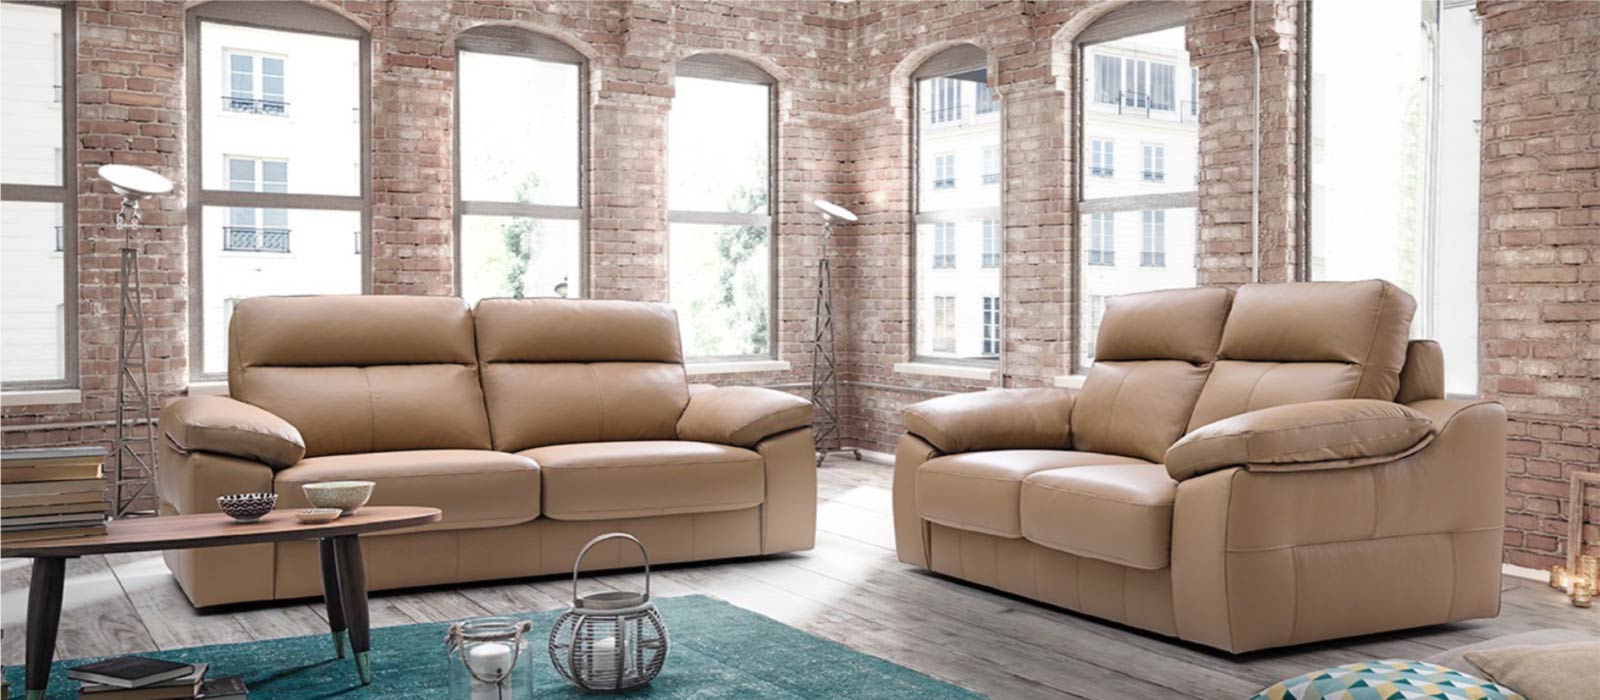 joyería Misión Integrar Cómo colocar dos sofás en un salón?